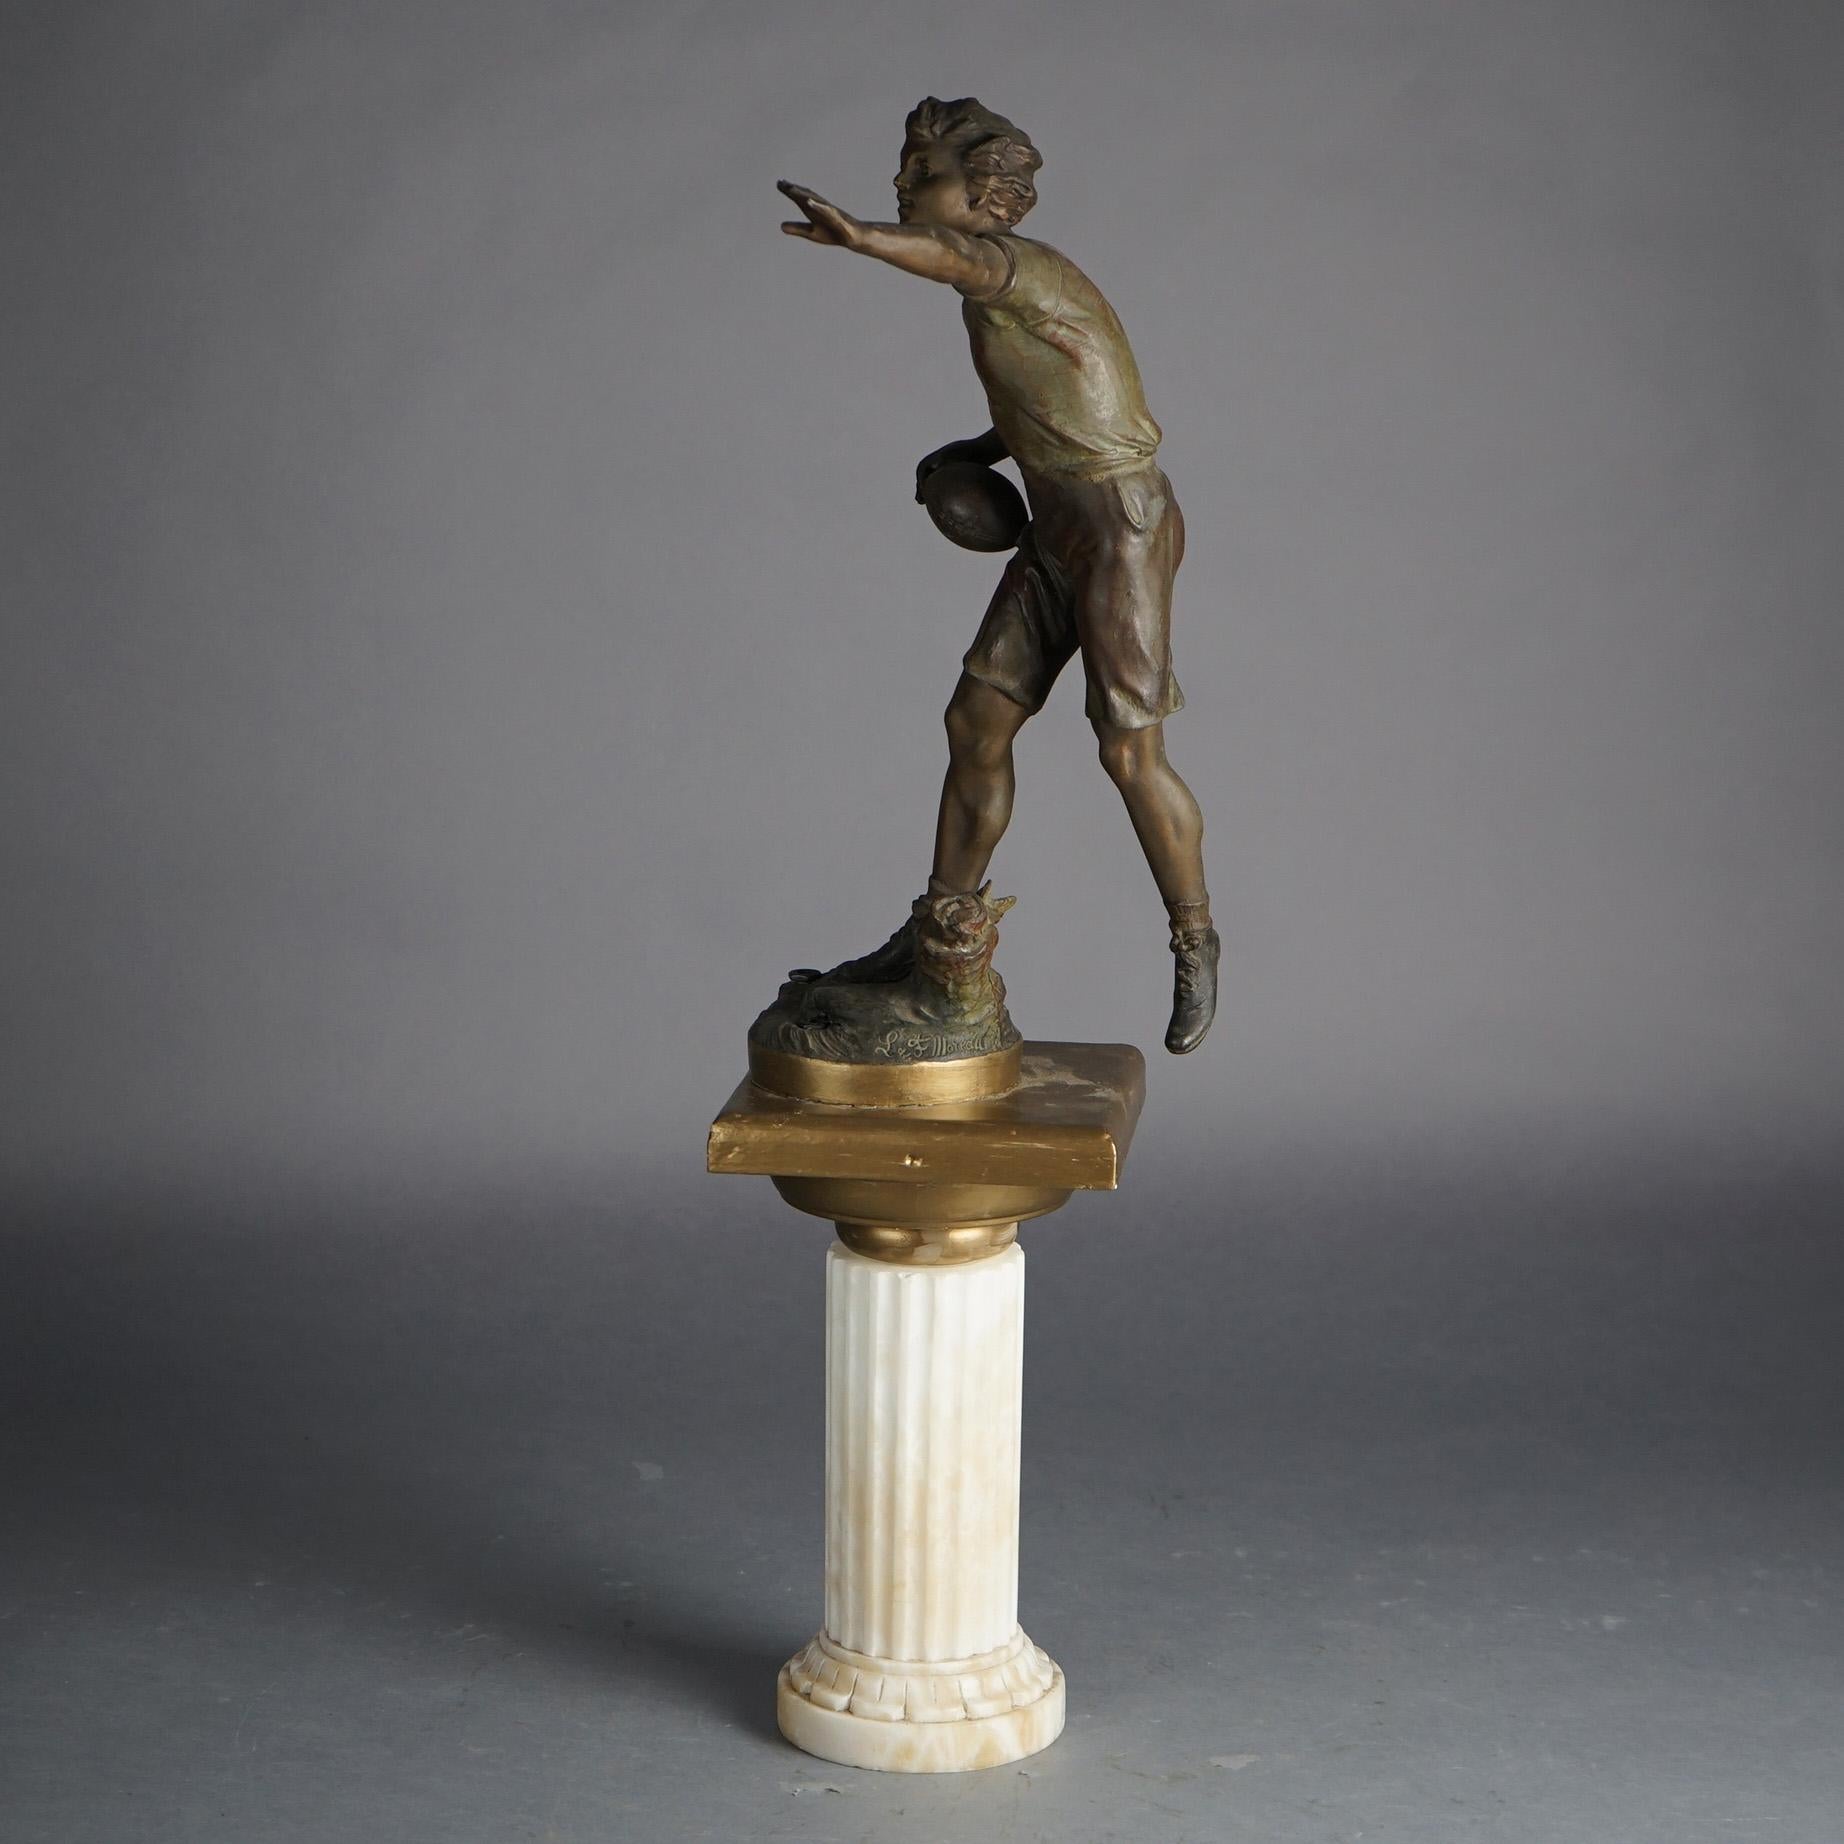 L & F Moreau Antike bronzierte Metall Fuß Spieler Statue auf Marmor geriffelte Säule C1900

Maße: 29''H x 11,75''B x 10''T